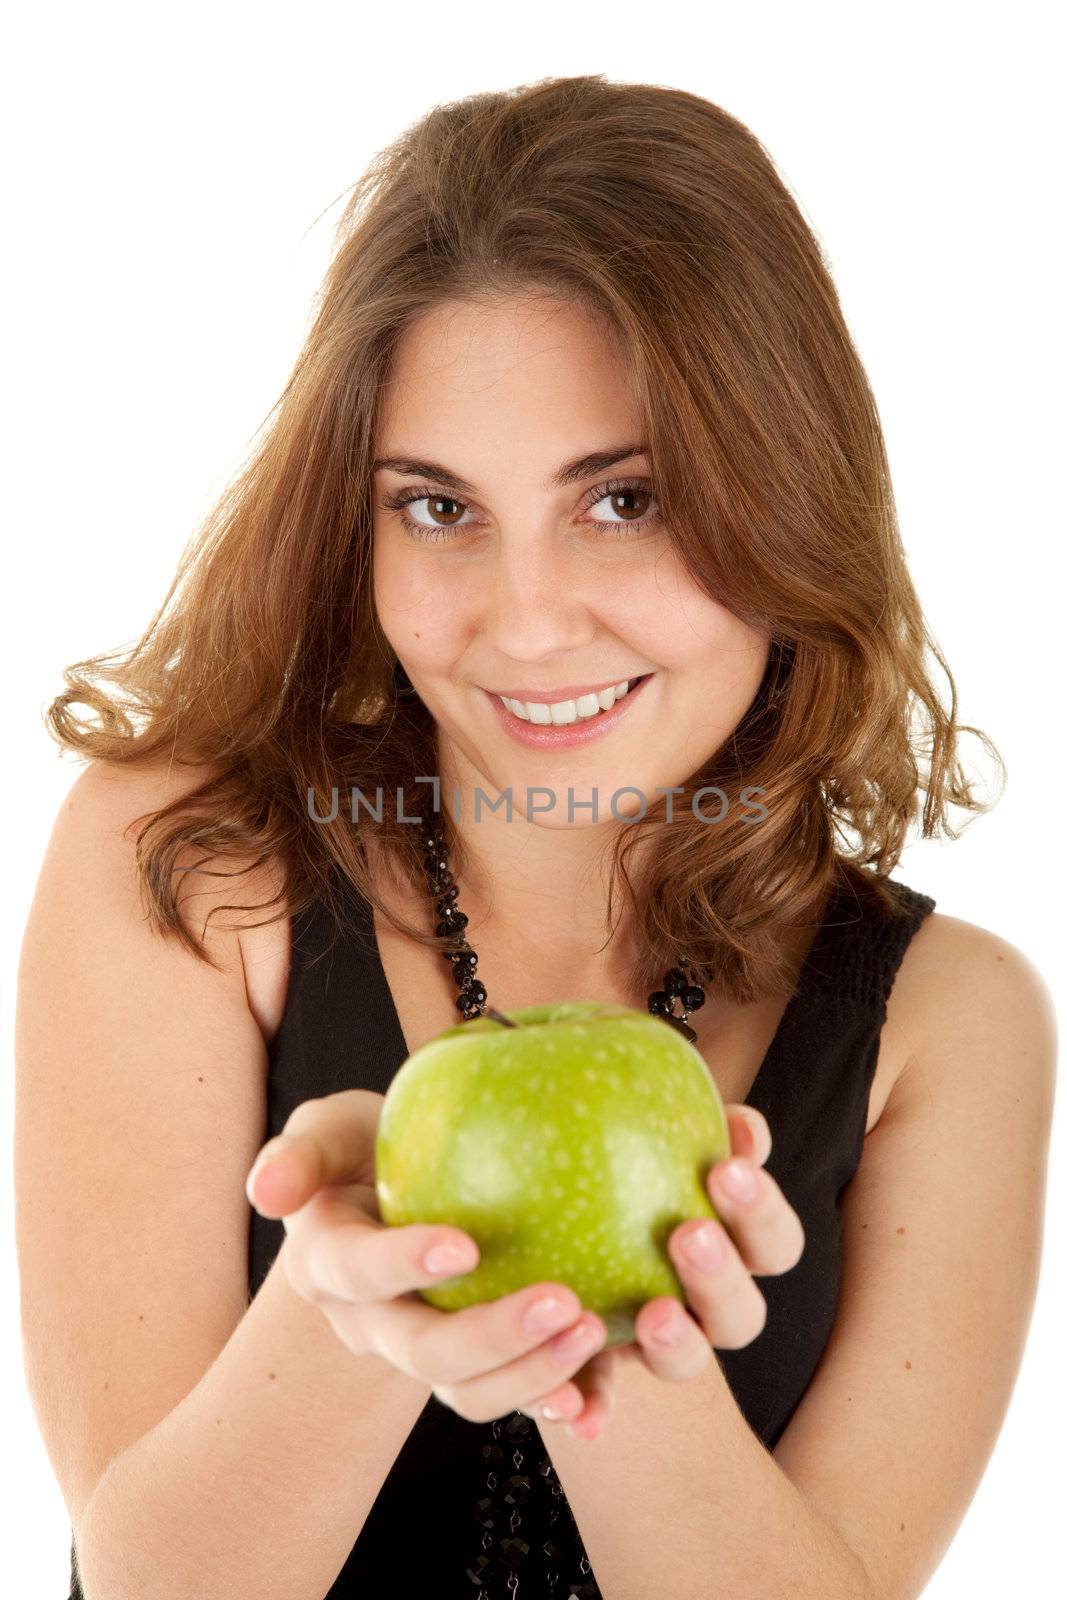 Beauty woman with fresh green apple by iryna_rasko